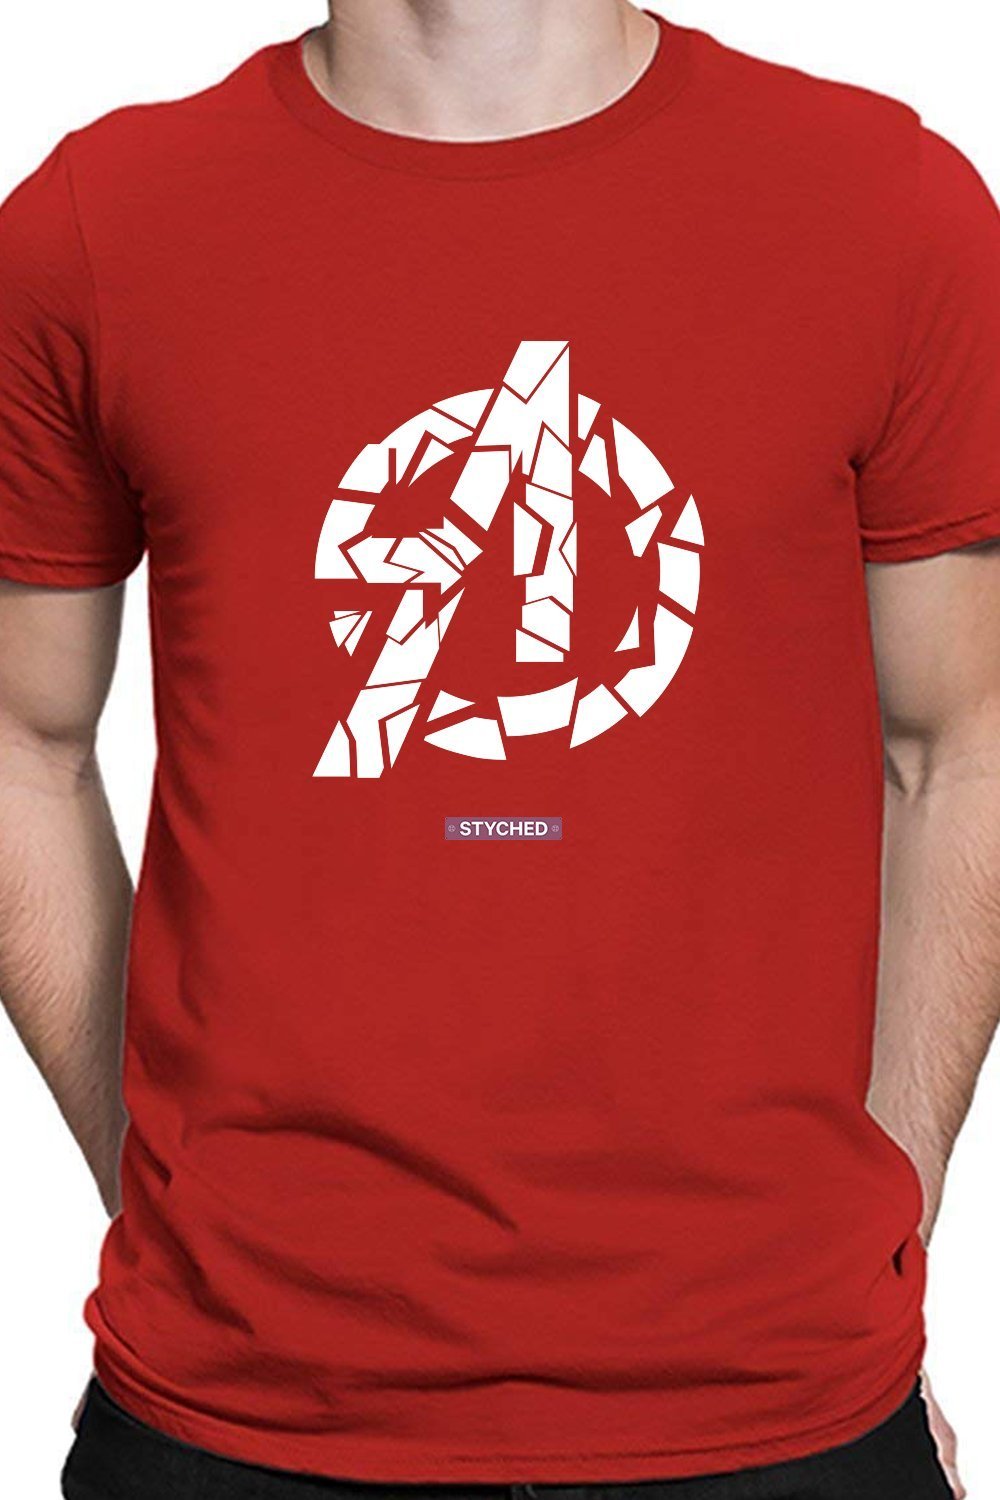 Avengers Endgame - Broken Avengers Logo Red T-Shirt